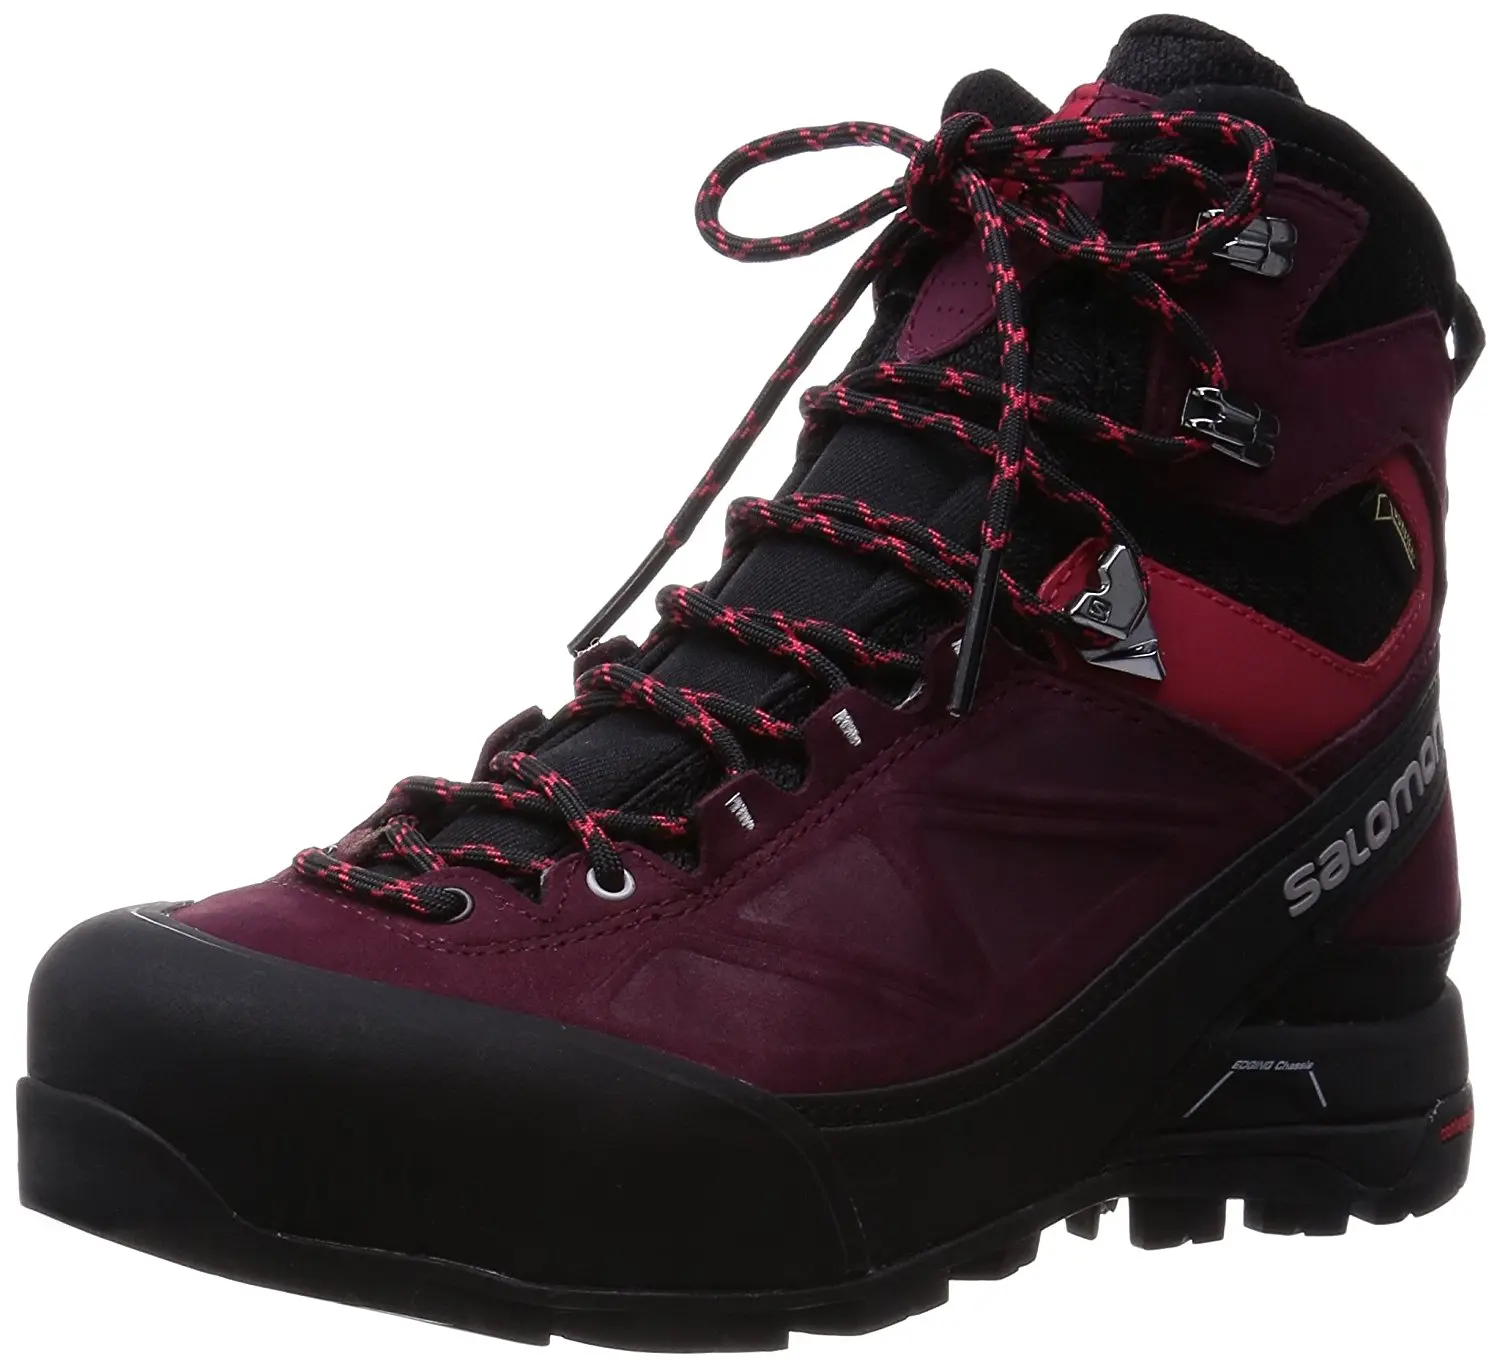 women's x alp mtn gtx hiking boots